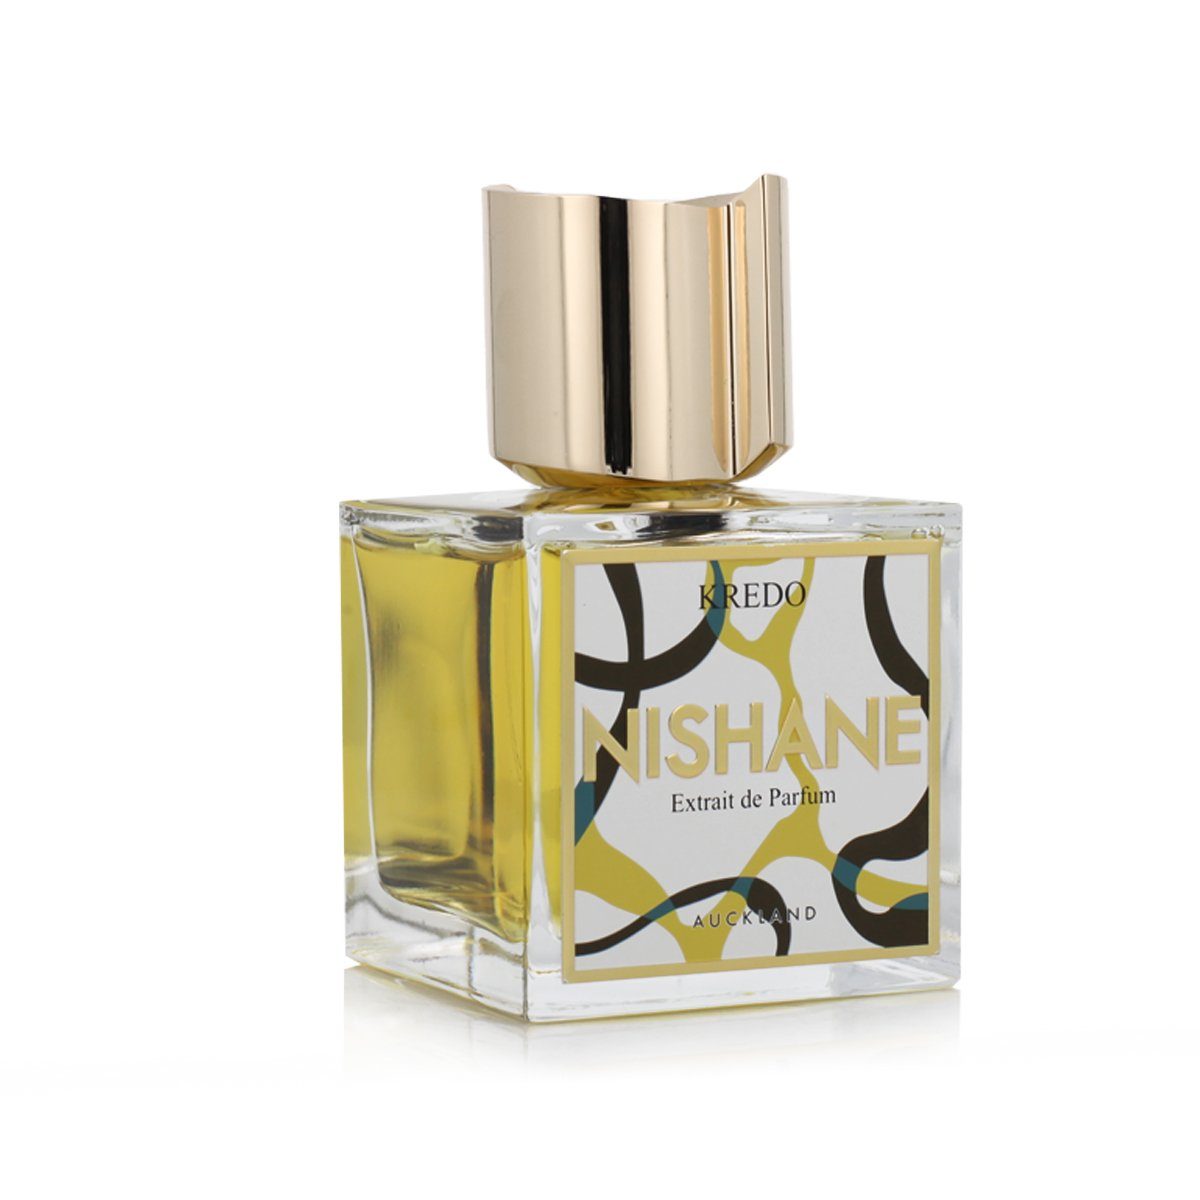 Kredo Extrait Parfum Nishane